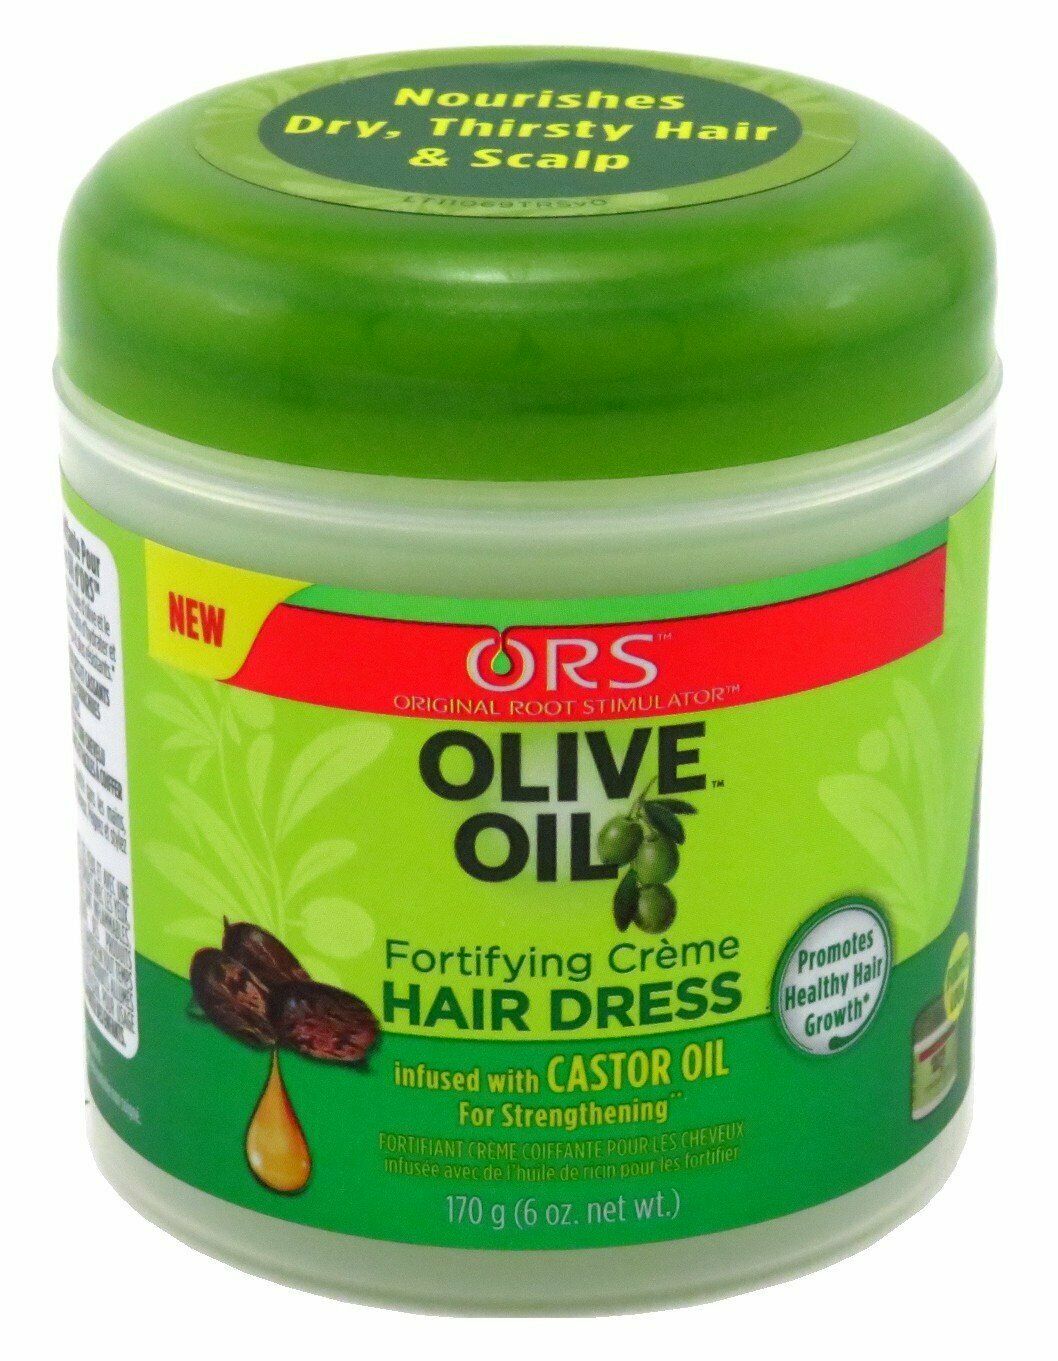 Ors Olive Oil Creme Hair Dress 6oz Jar 2 Pack - image 1 of 2